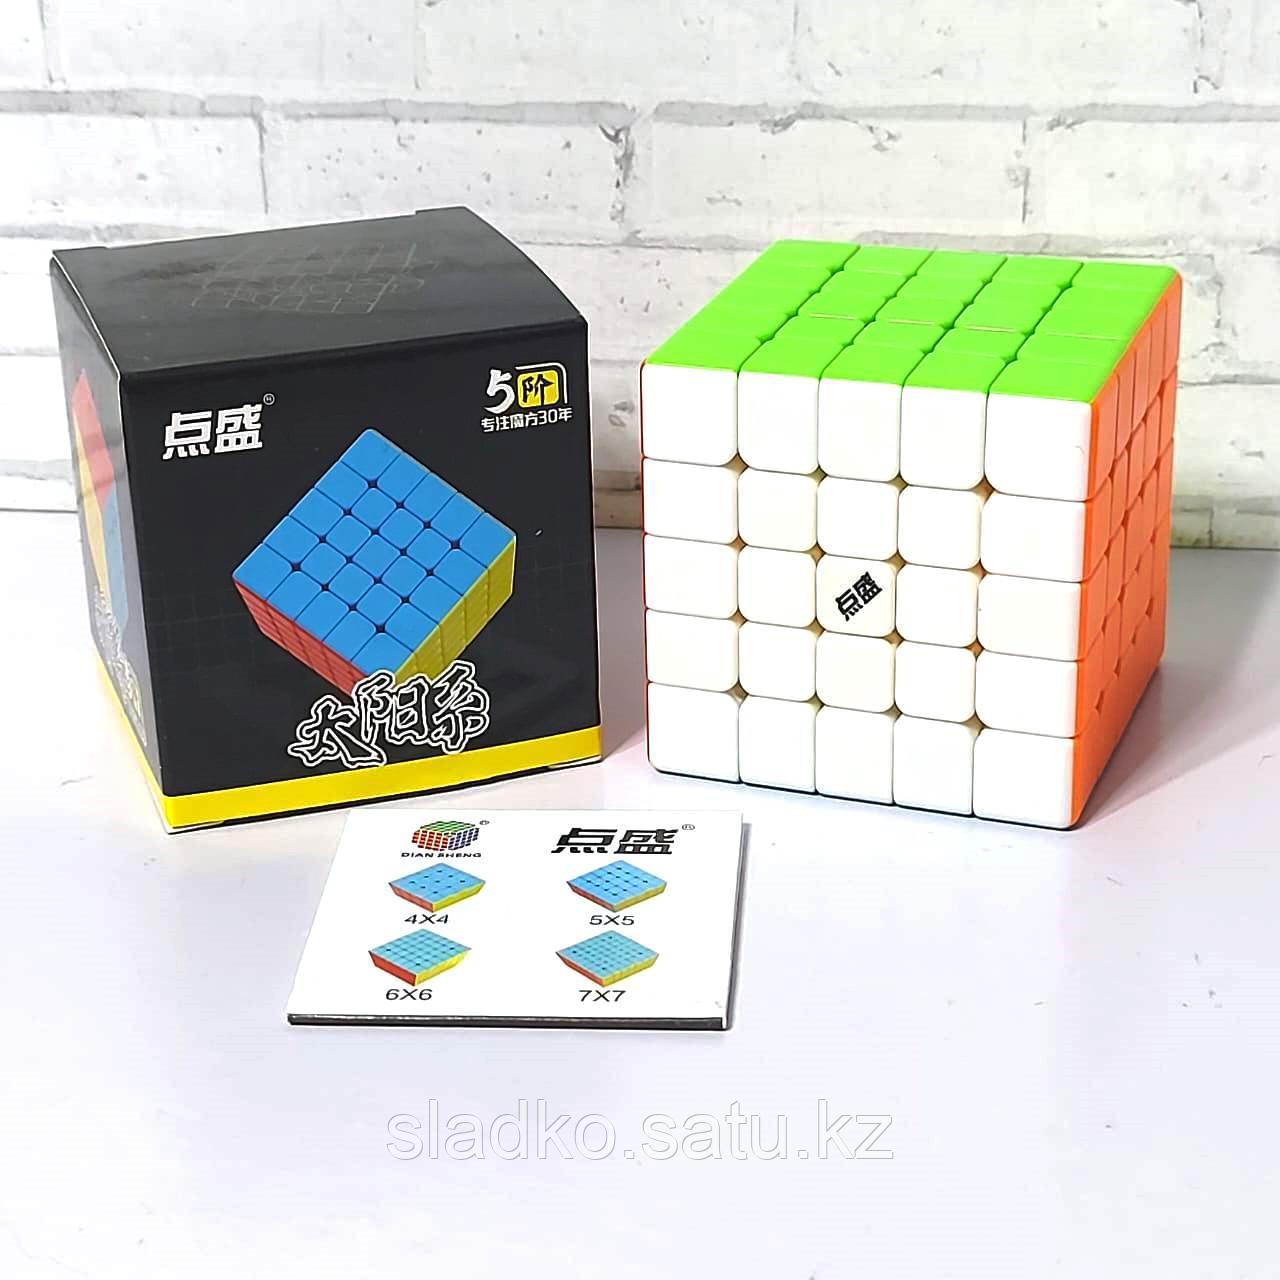 Скоростная головоломка DianSheng 5x5